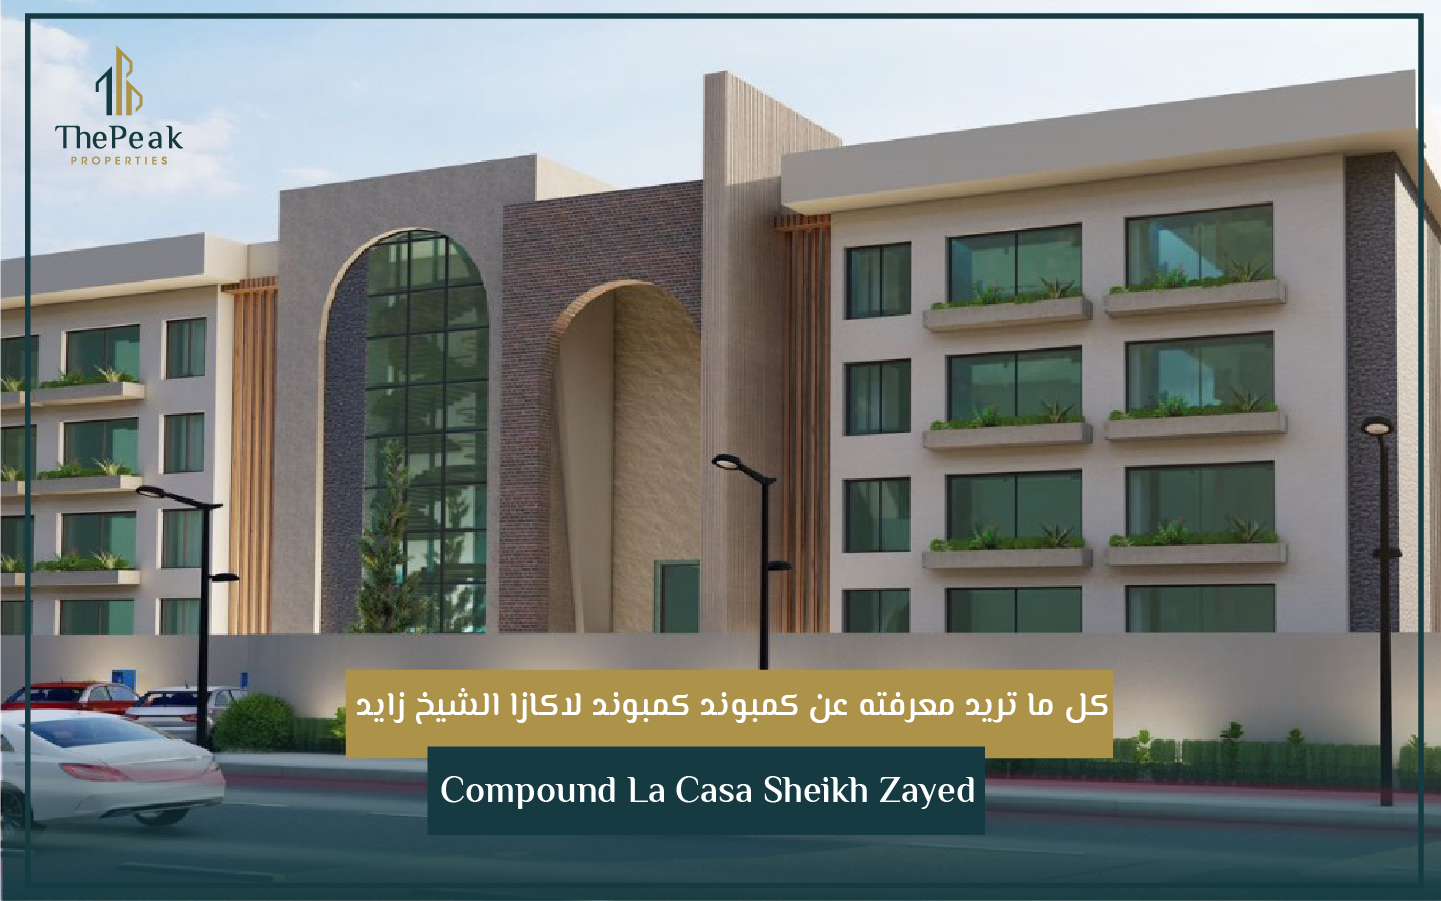 "شقة للبيع بالتقسيط بالشيخ زايد  مساحة 178 متر  مقدم 15 % و تقسيط علي 5 سنوات  في كمبوند Lacasa compound El Sheikh Zayed" | THE PEAK PROPERTIES